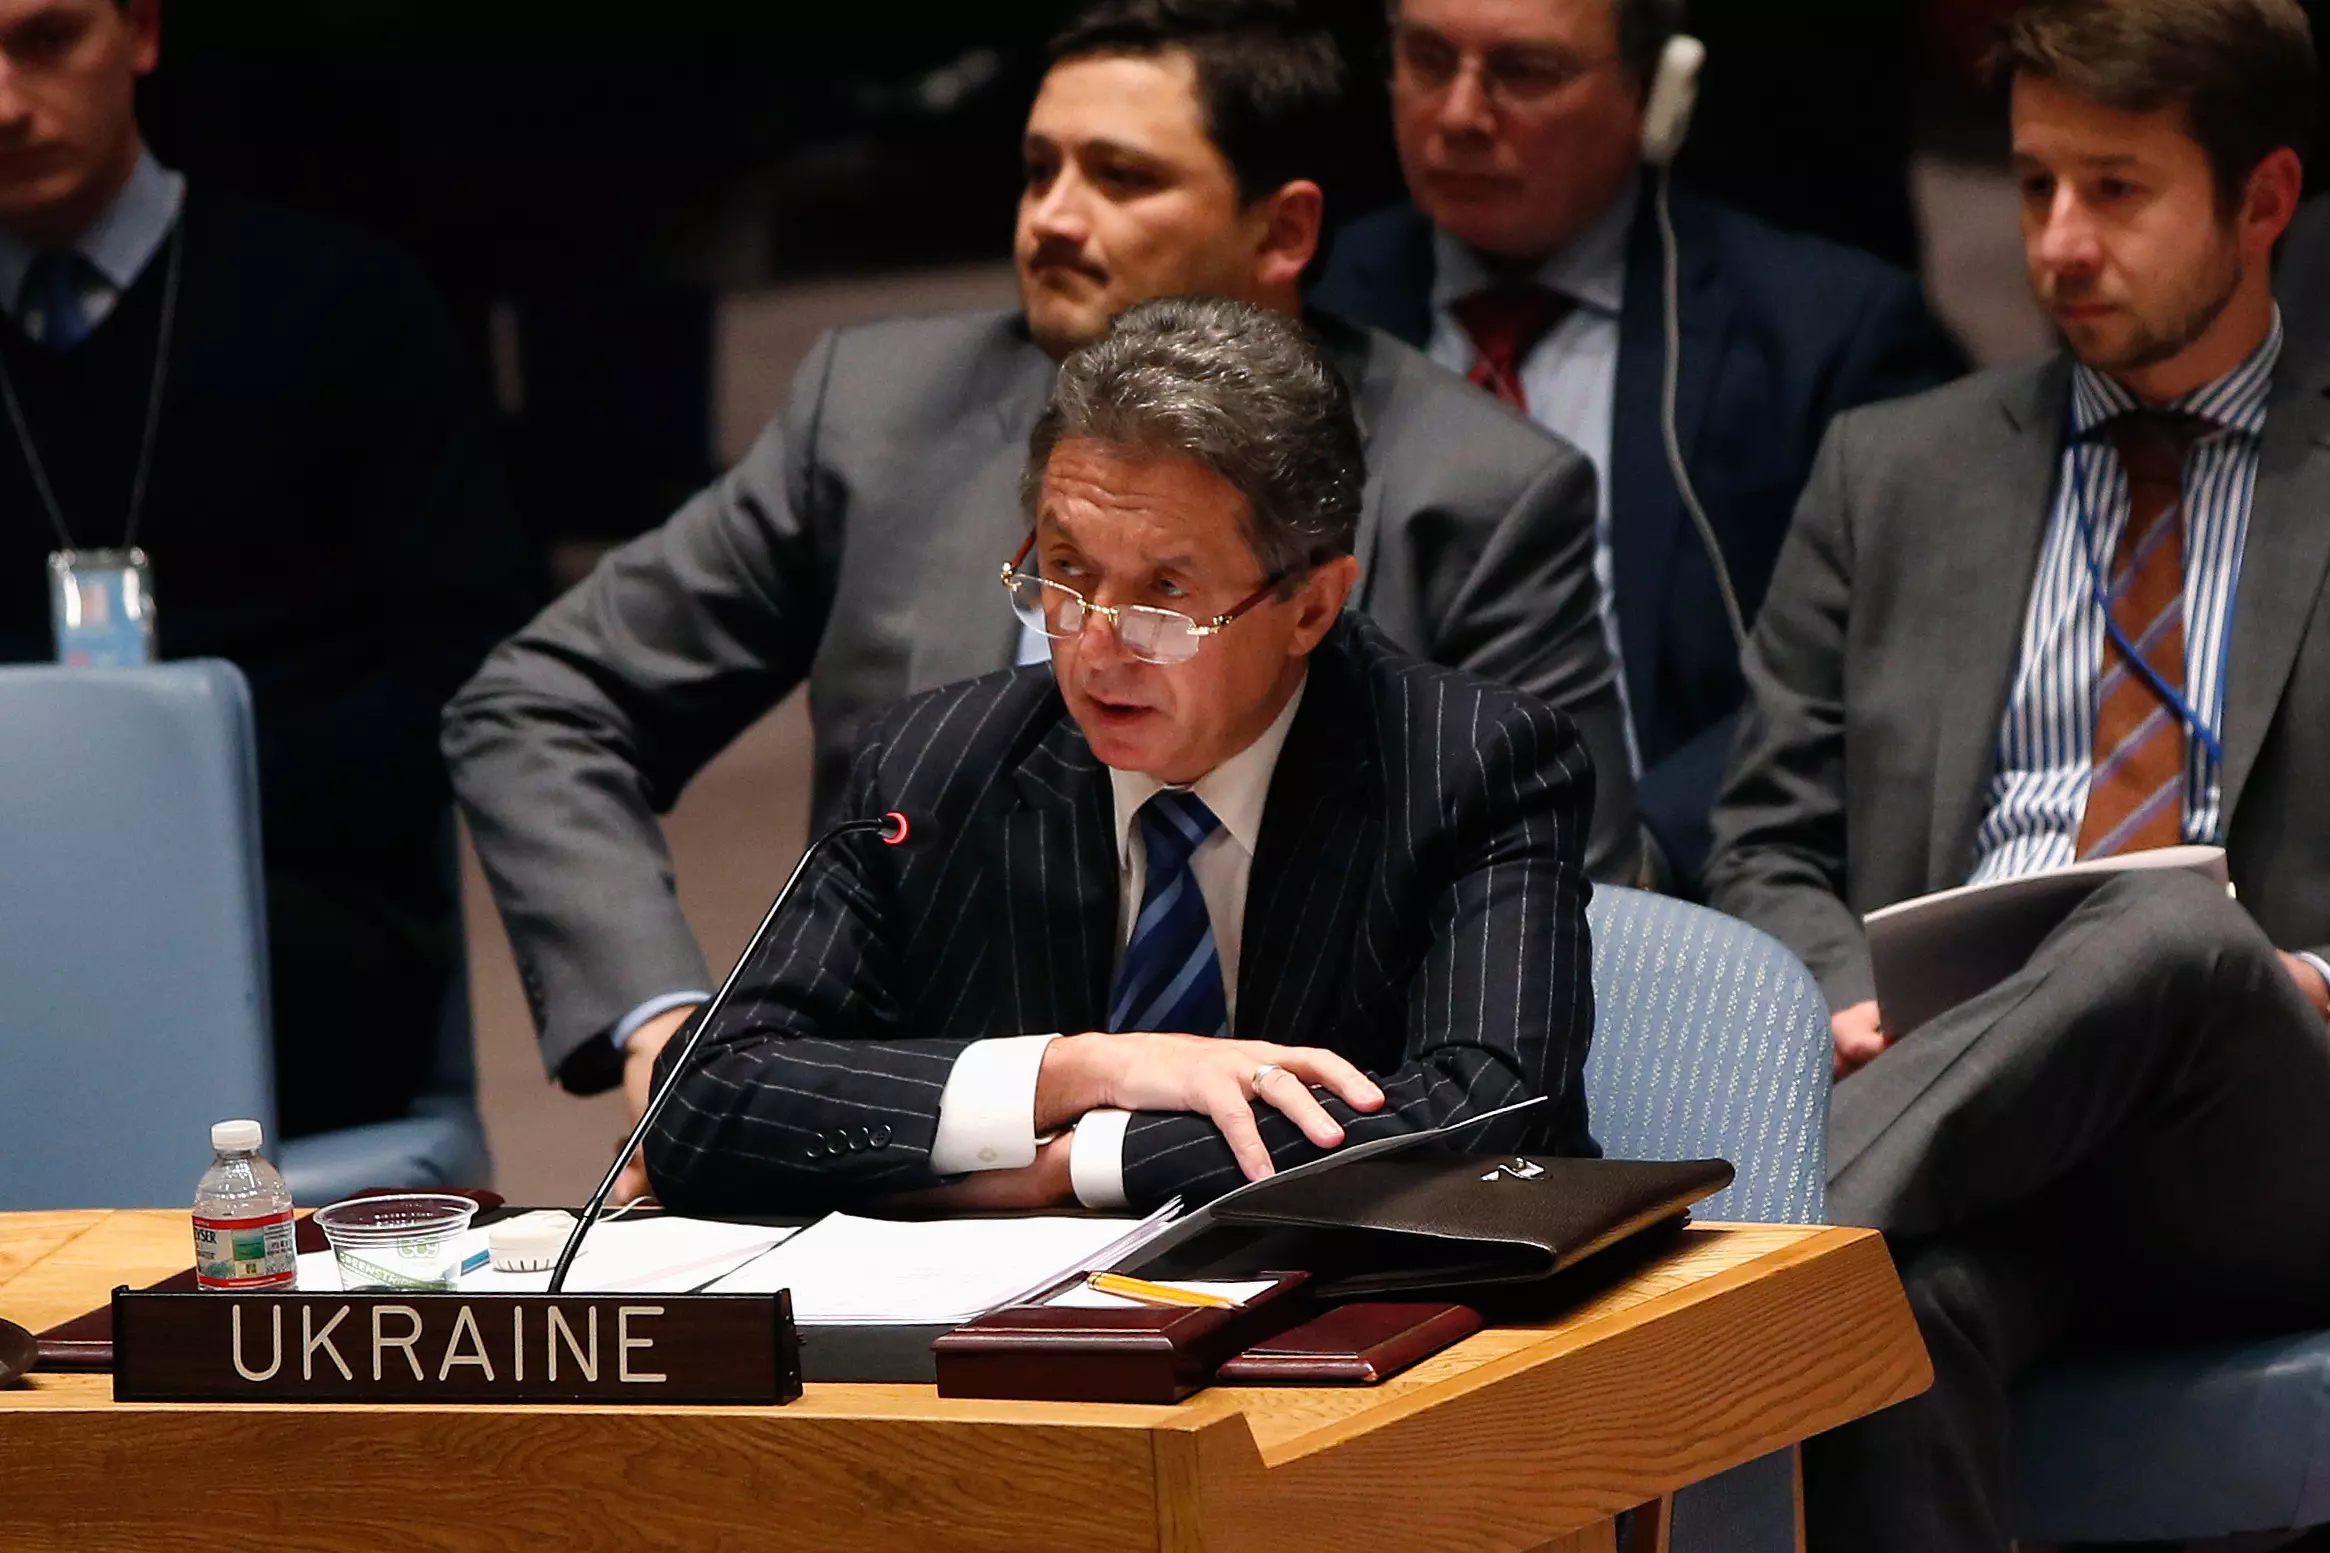 "16 אלף חיילים רוסיים נפרשו בחצי האי קרים". השגריר האוקראיני באו"ם, אמש